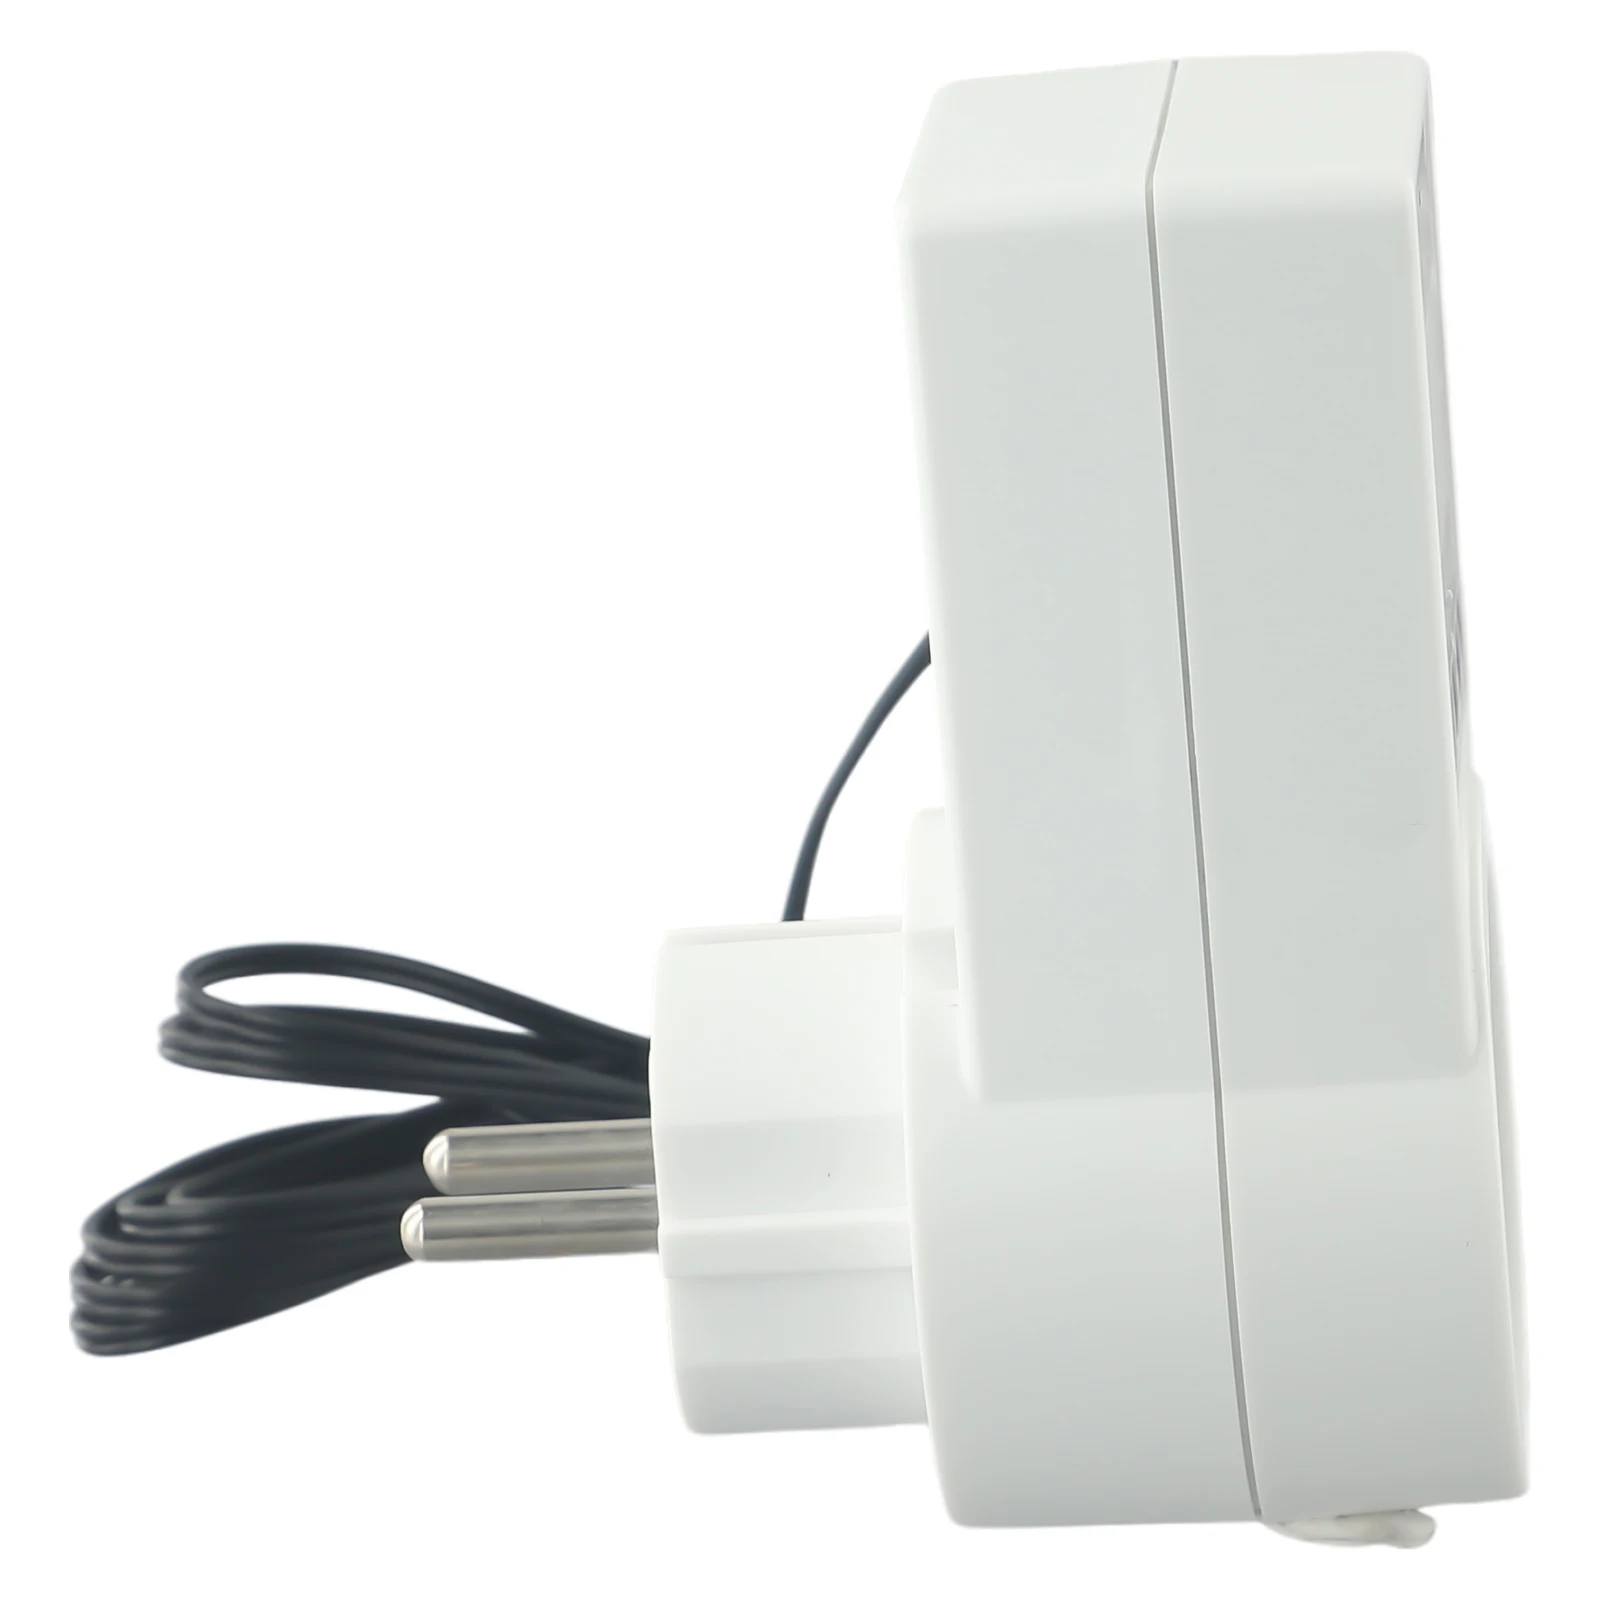 Temperatuur Schakelaar Thermostaat Sockets Digital Eu Plug 100-240V Ac Voor Kas Verwarming Lcd Display Temperatuurregelaar